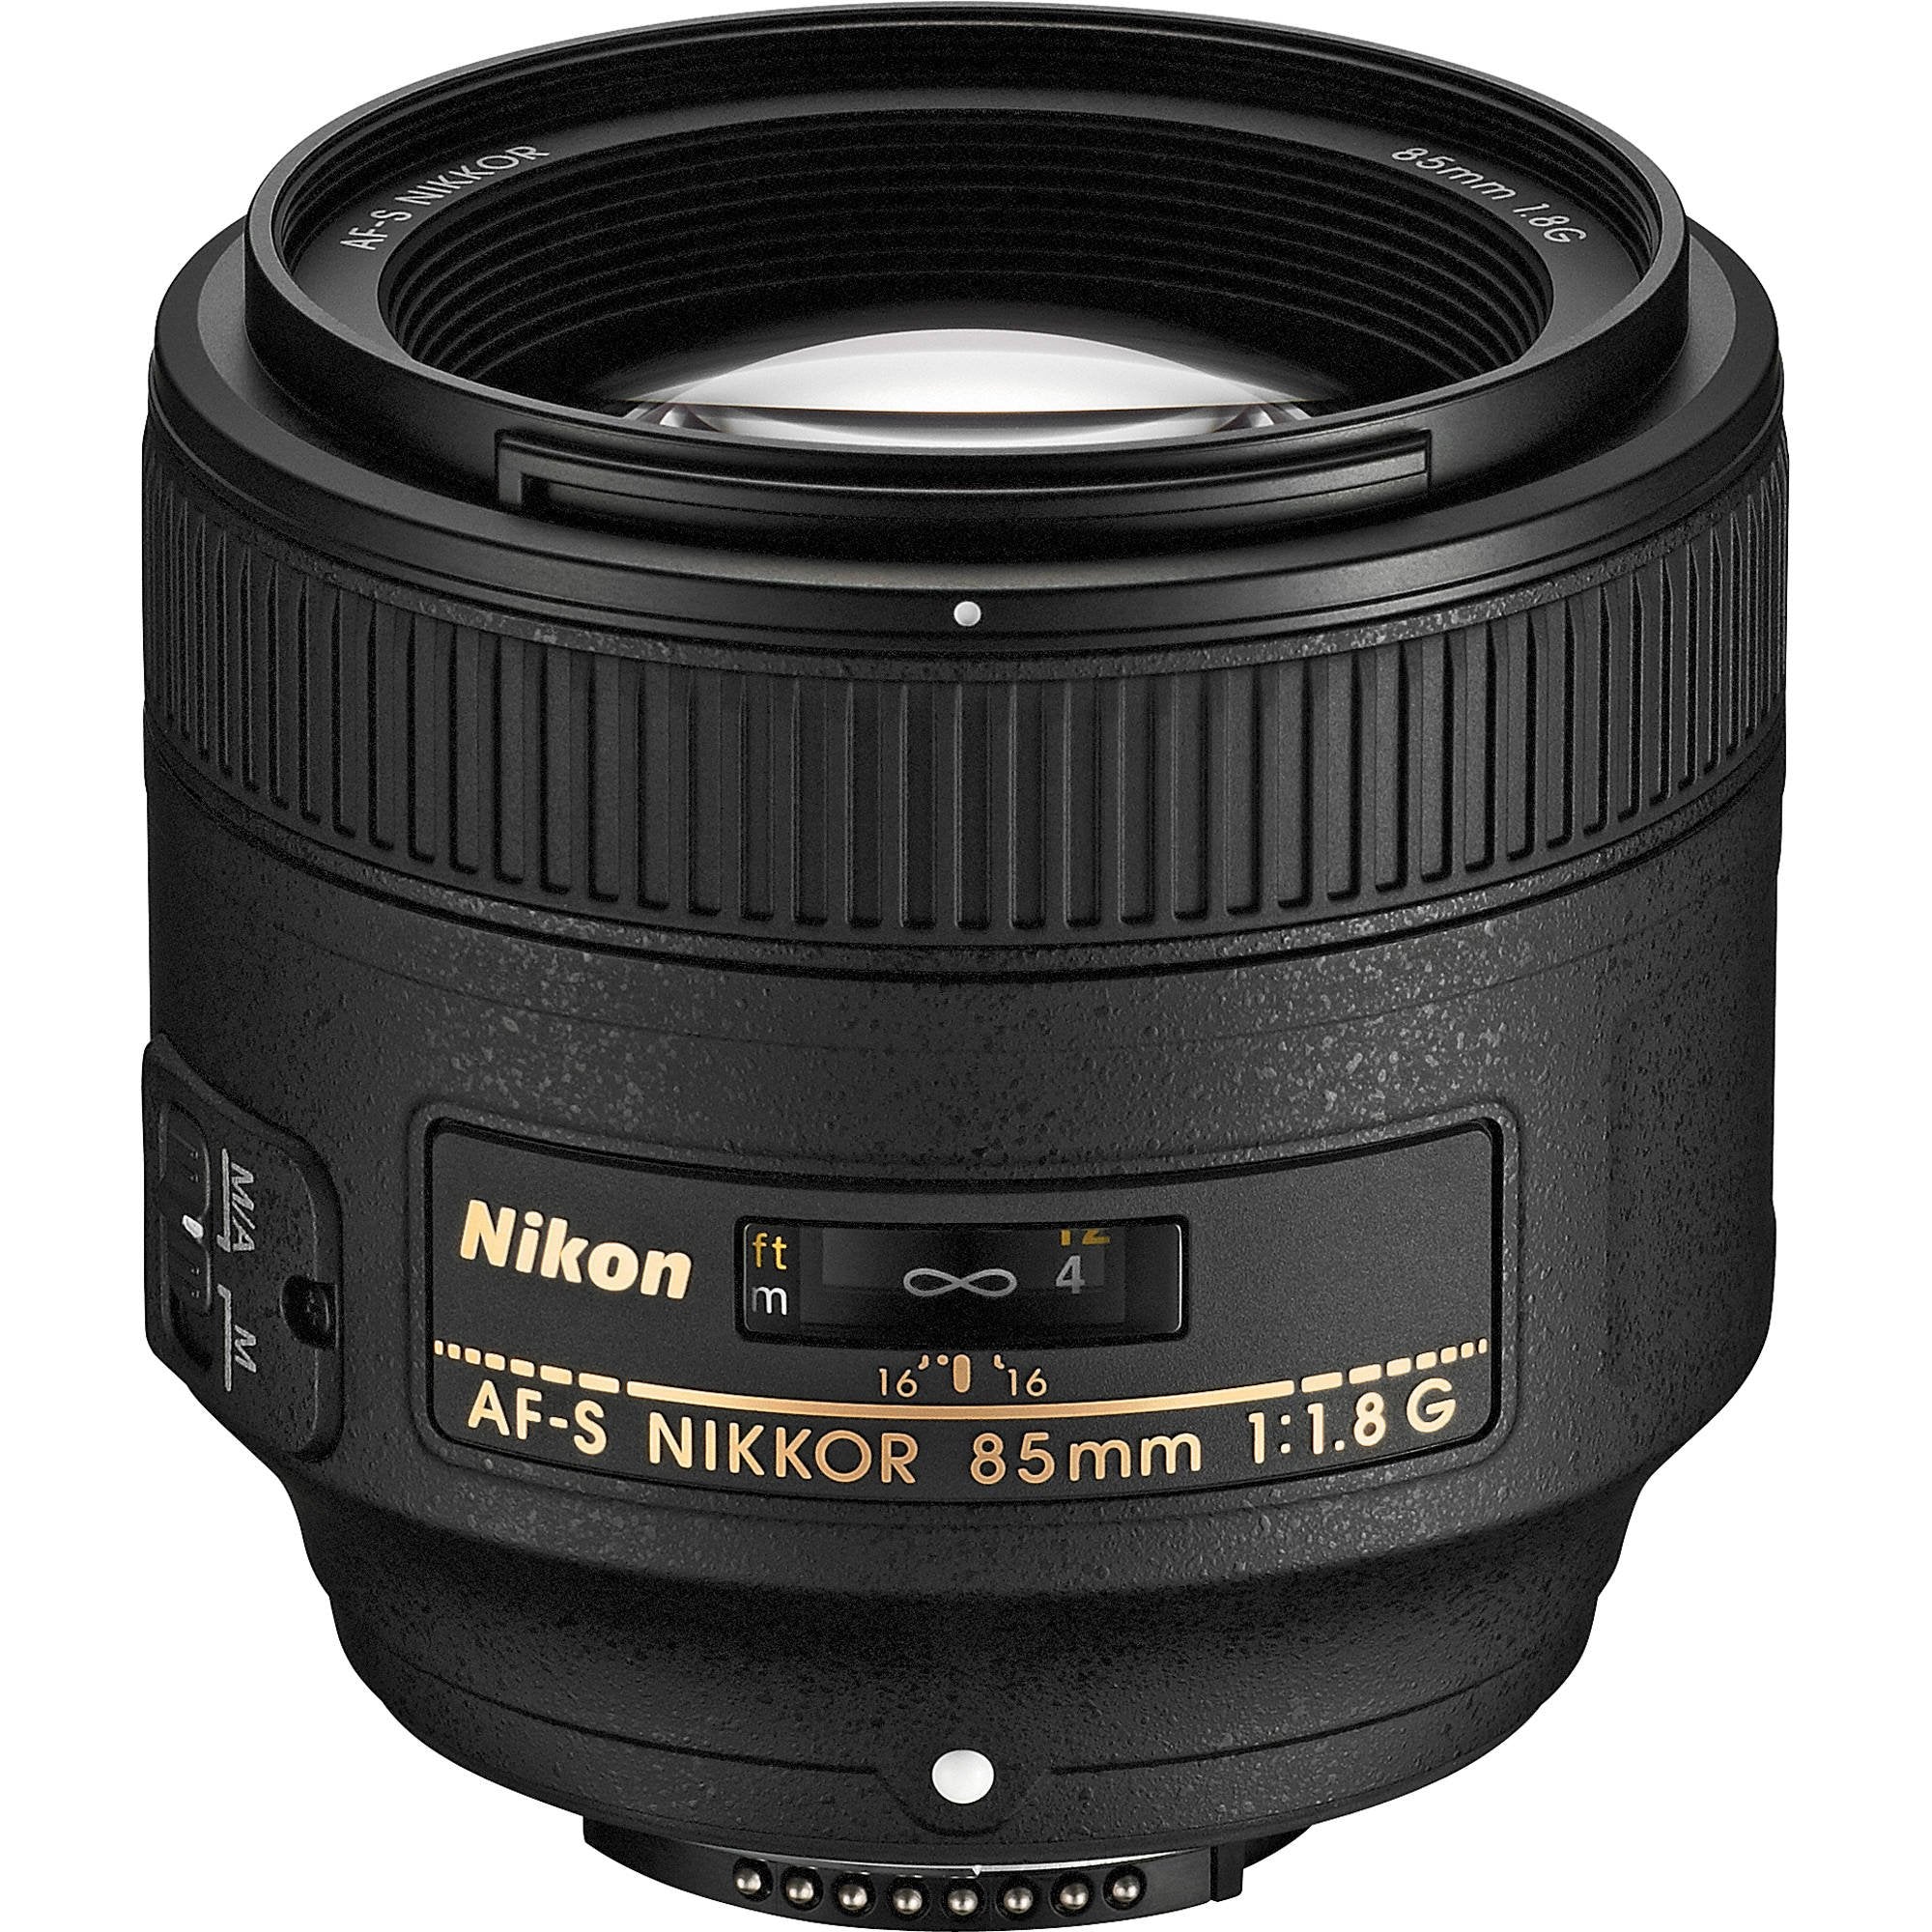 Nikon 85MM f.1.8G AF-S Lens (Intl Model) + 4.5 inch Vivitar Premium Lens Case + Vivitar Graduated Color Filter Set + 3pcs UV Lens Filter Kit + Cleaning Kit